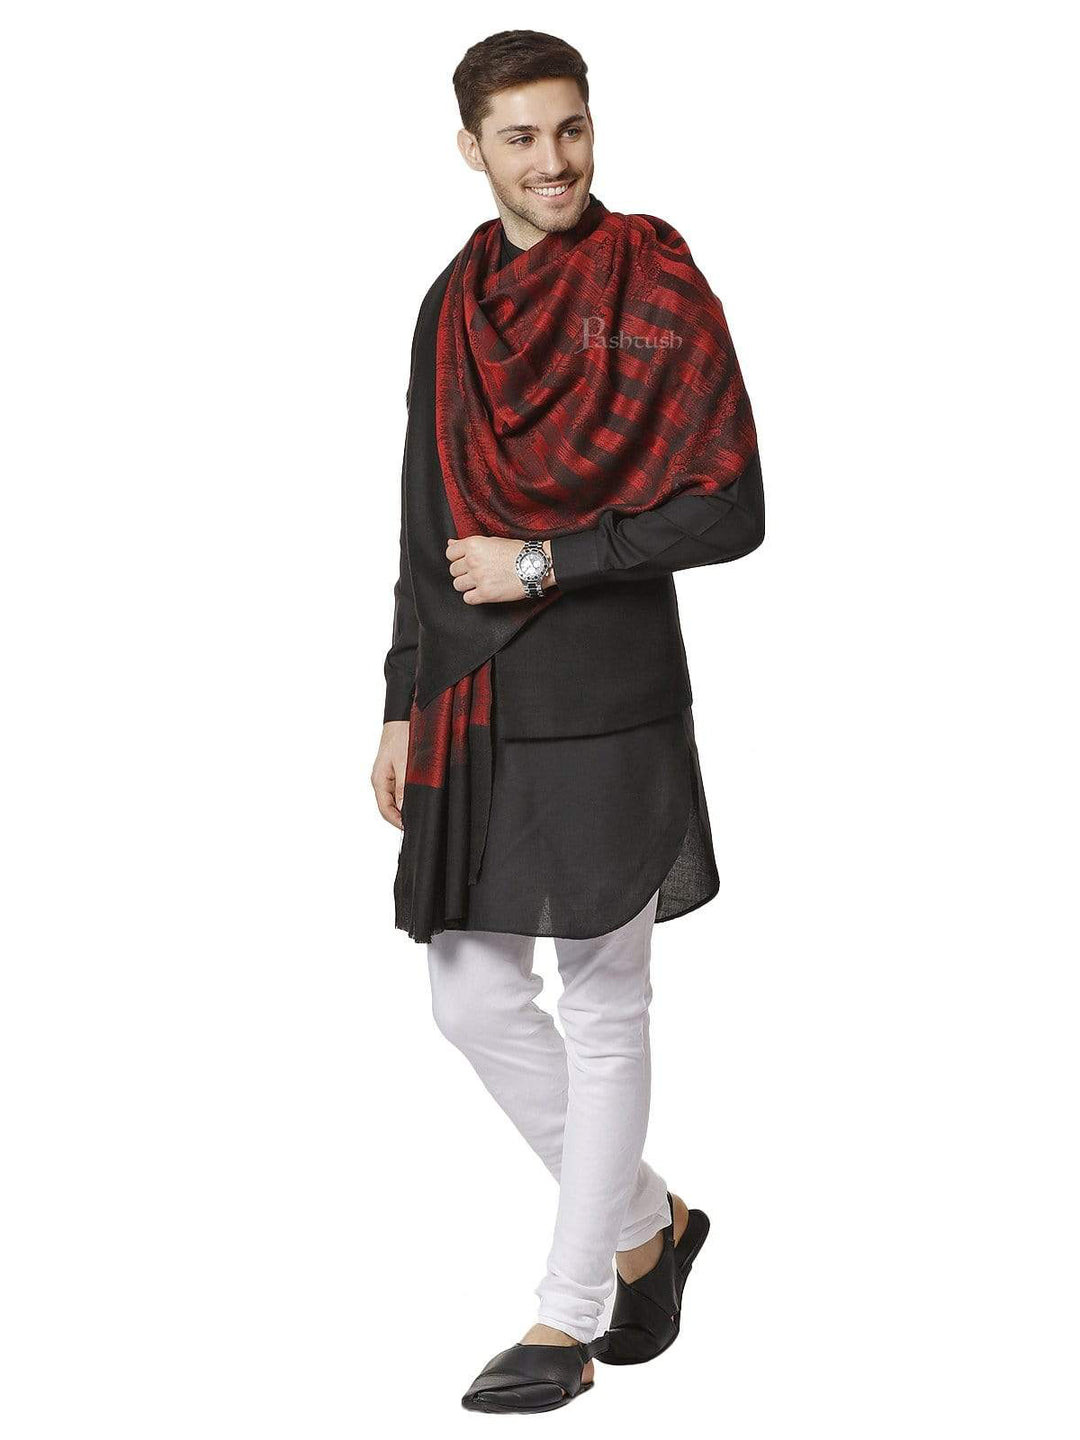 Pashtush India 70x200 Pashtush Mens Fine Wool Stole, Ikkat Design, Maroon and Black